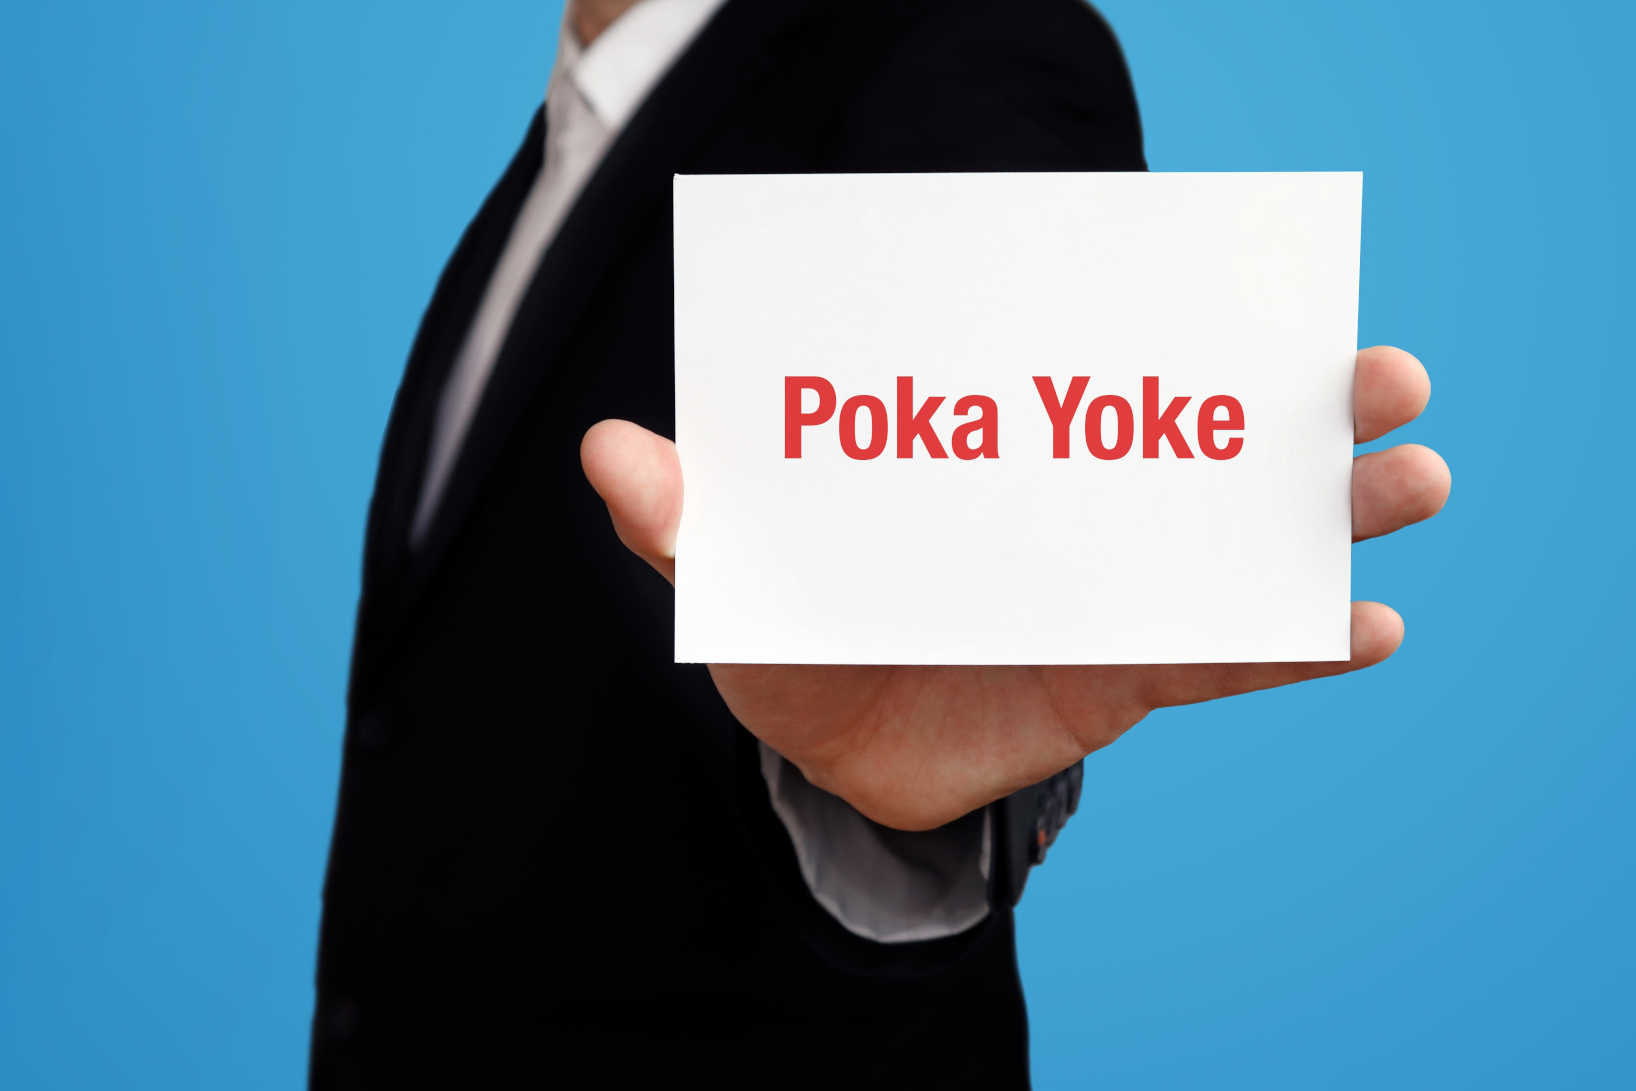 Poka Yoke Eine Technik Zur 100 Prozent Kontrolle Weka